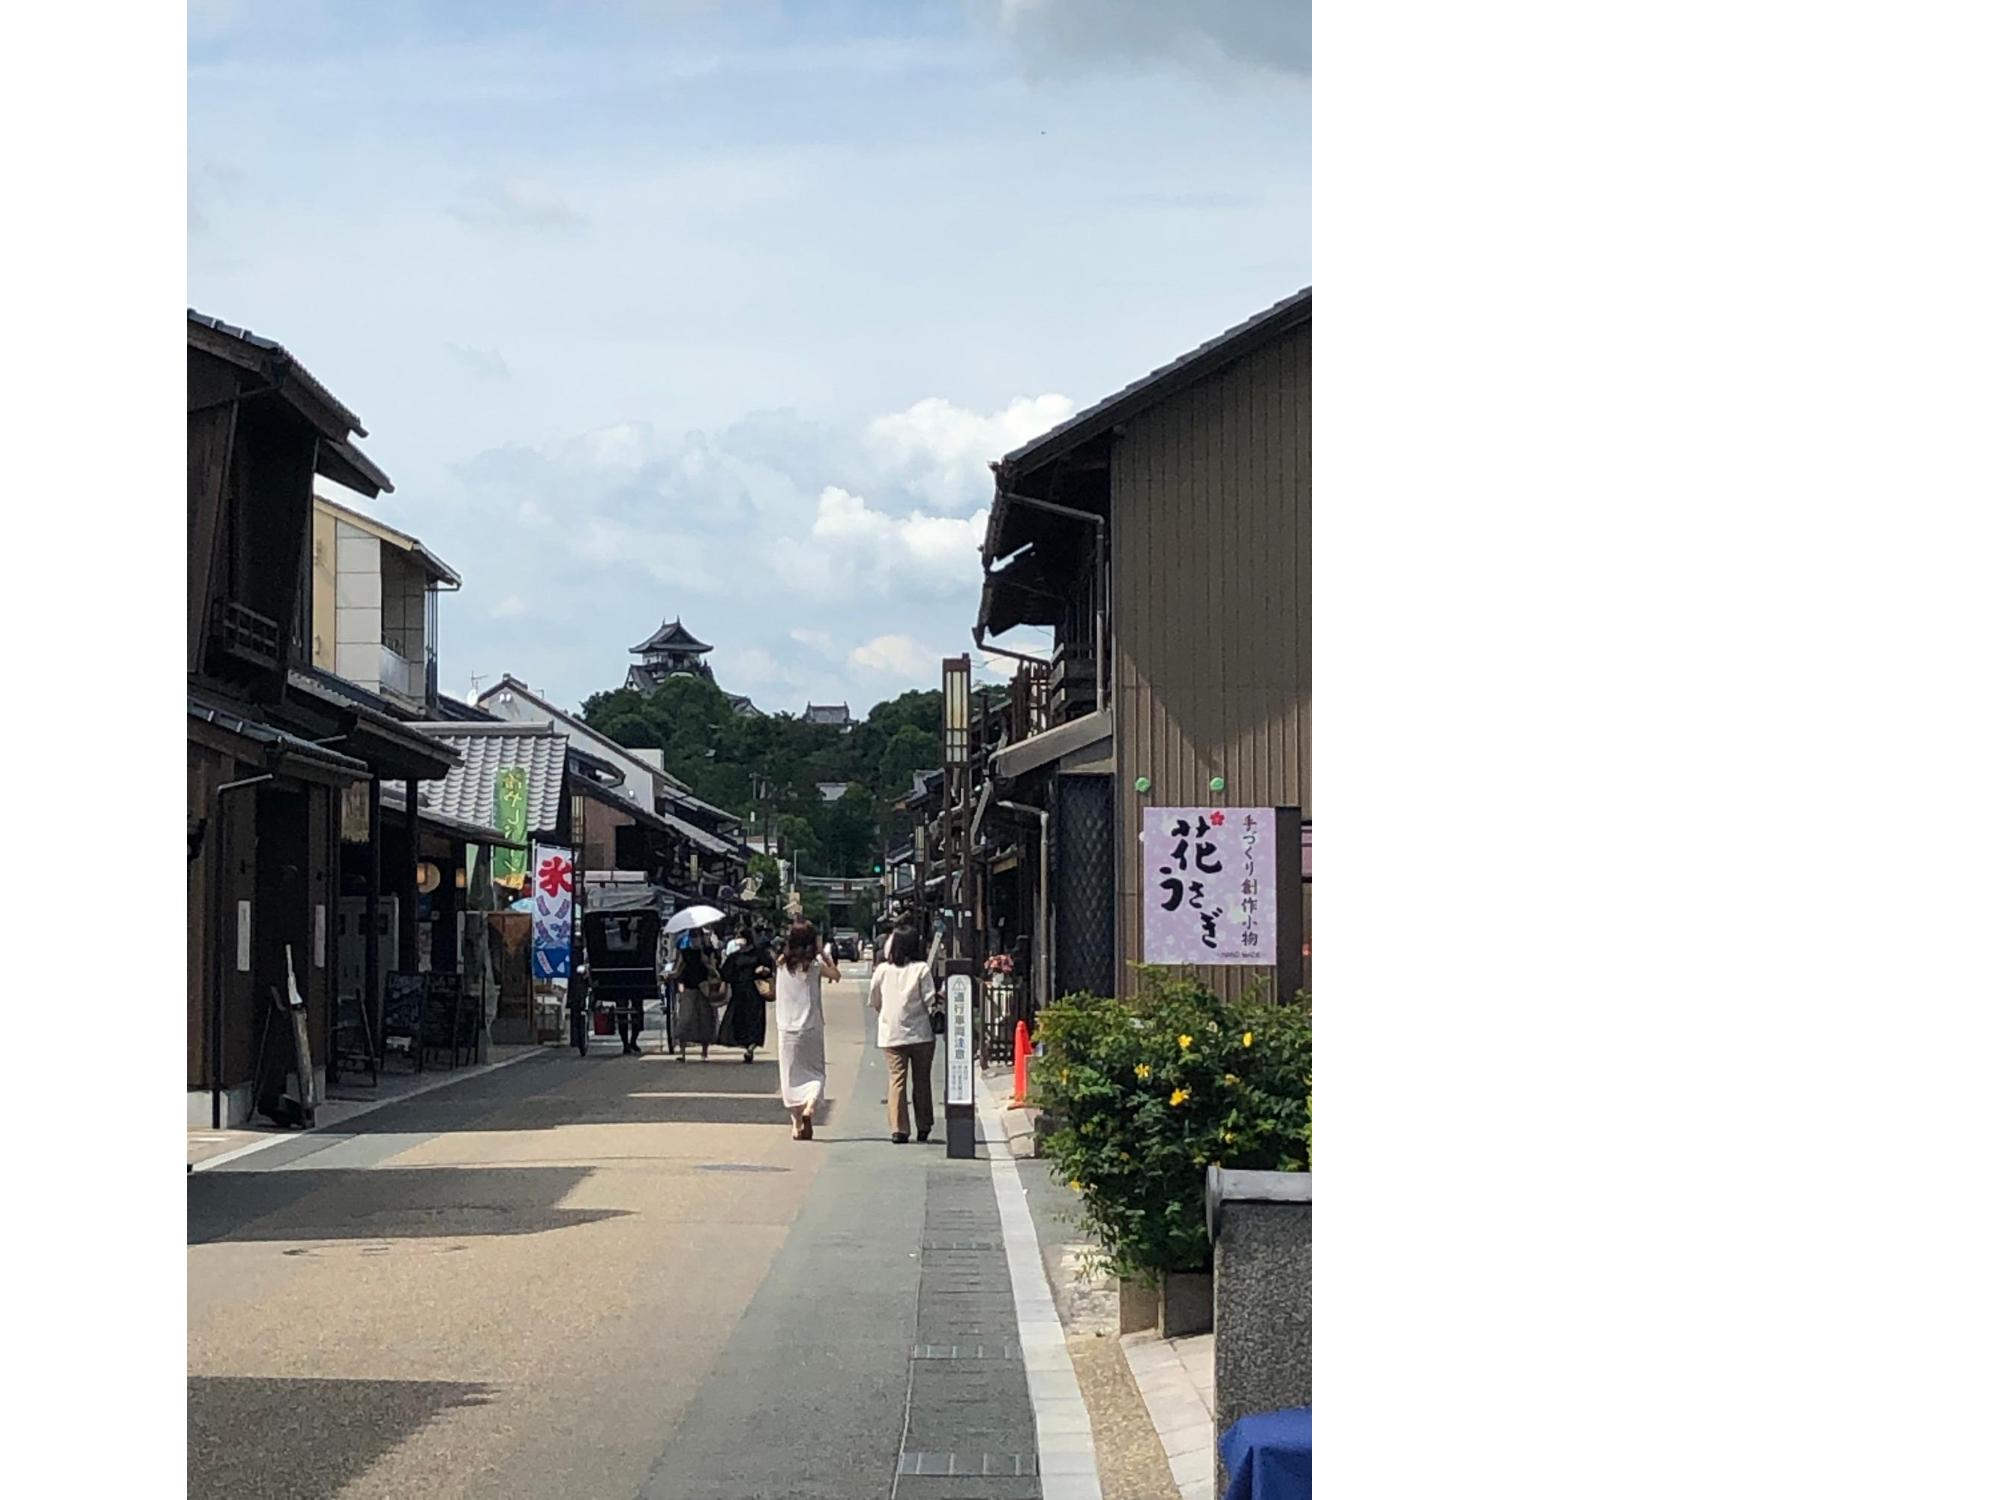 犬山市の城下町の様子。観光客が何人か歩いている。